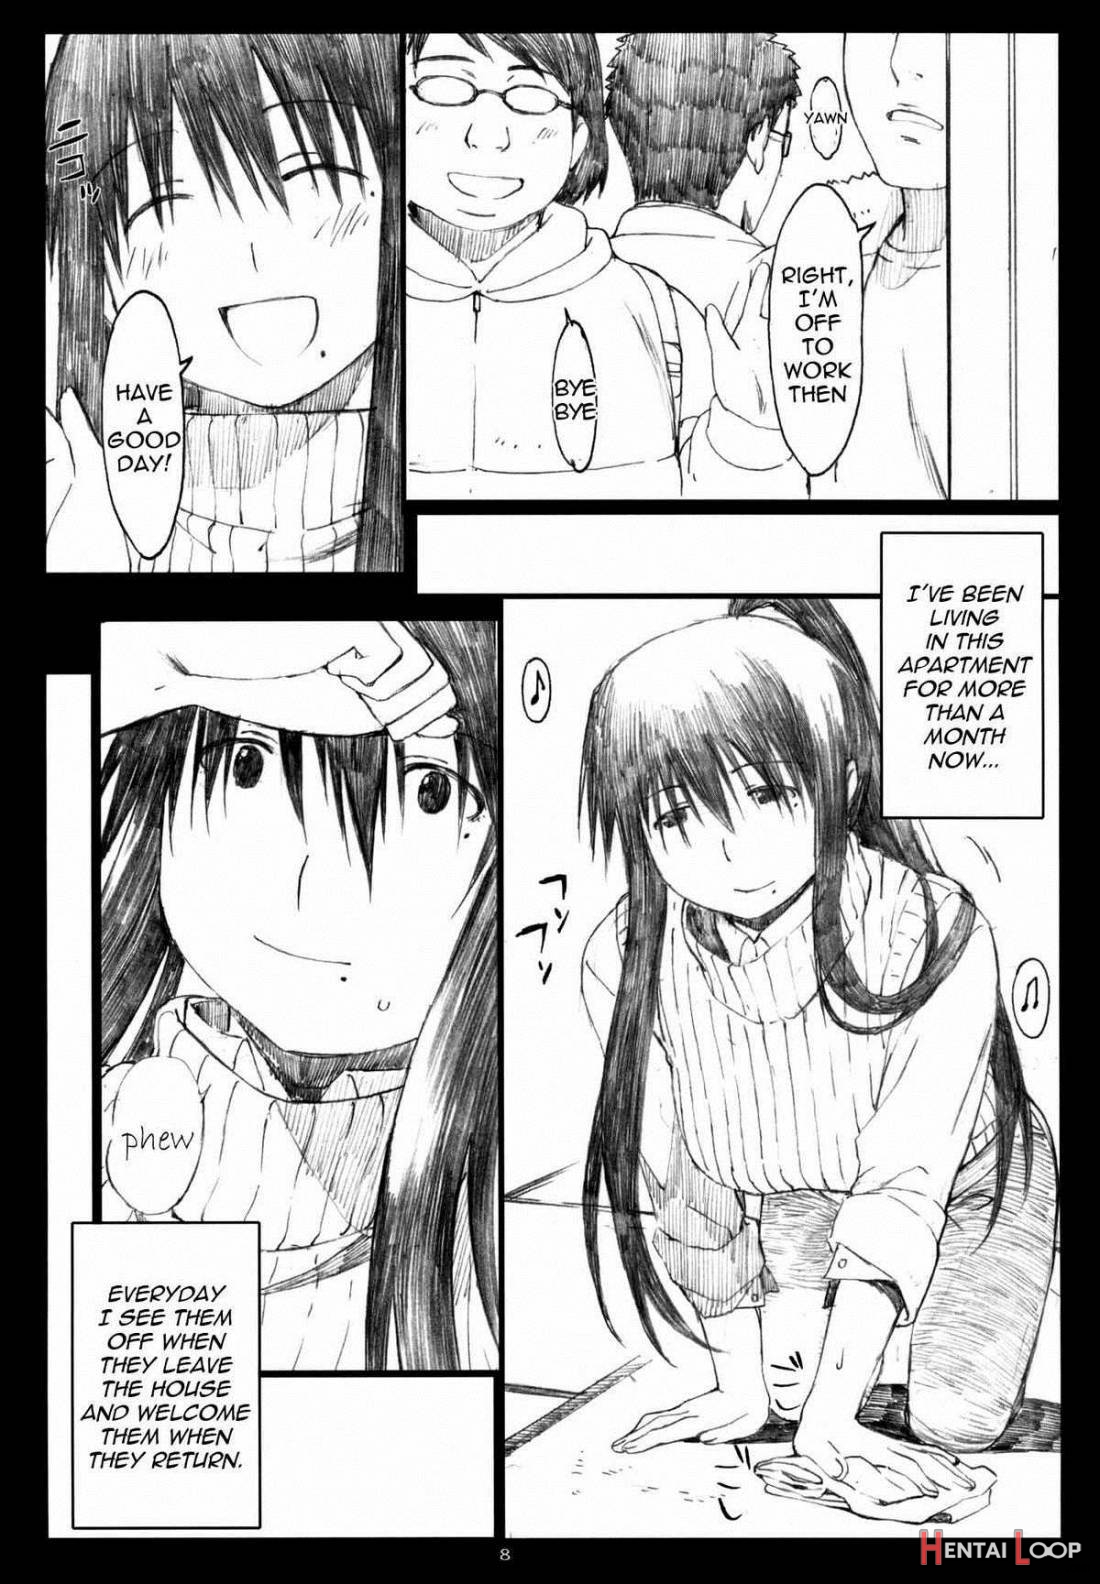 Oono Shiki #5 page 6